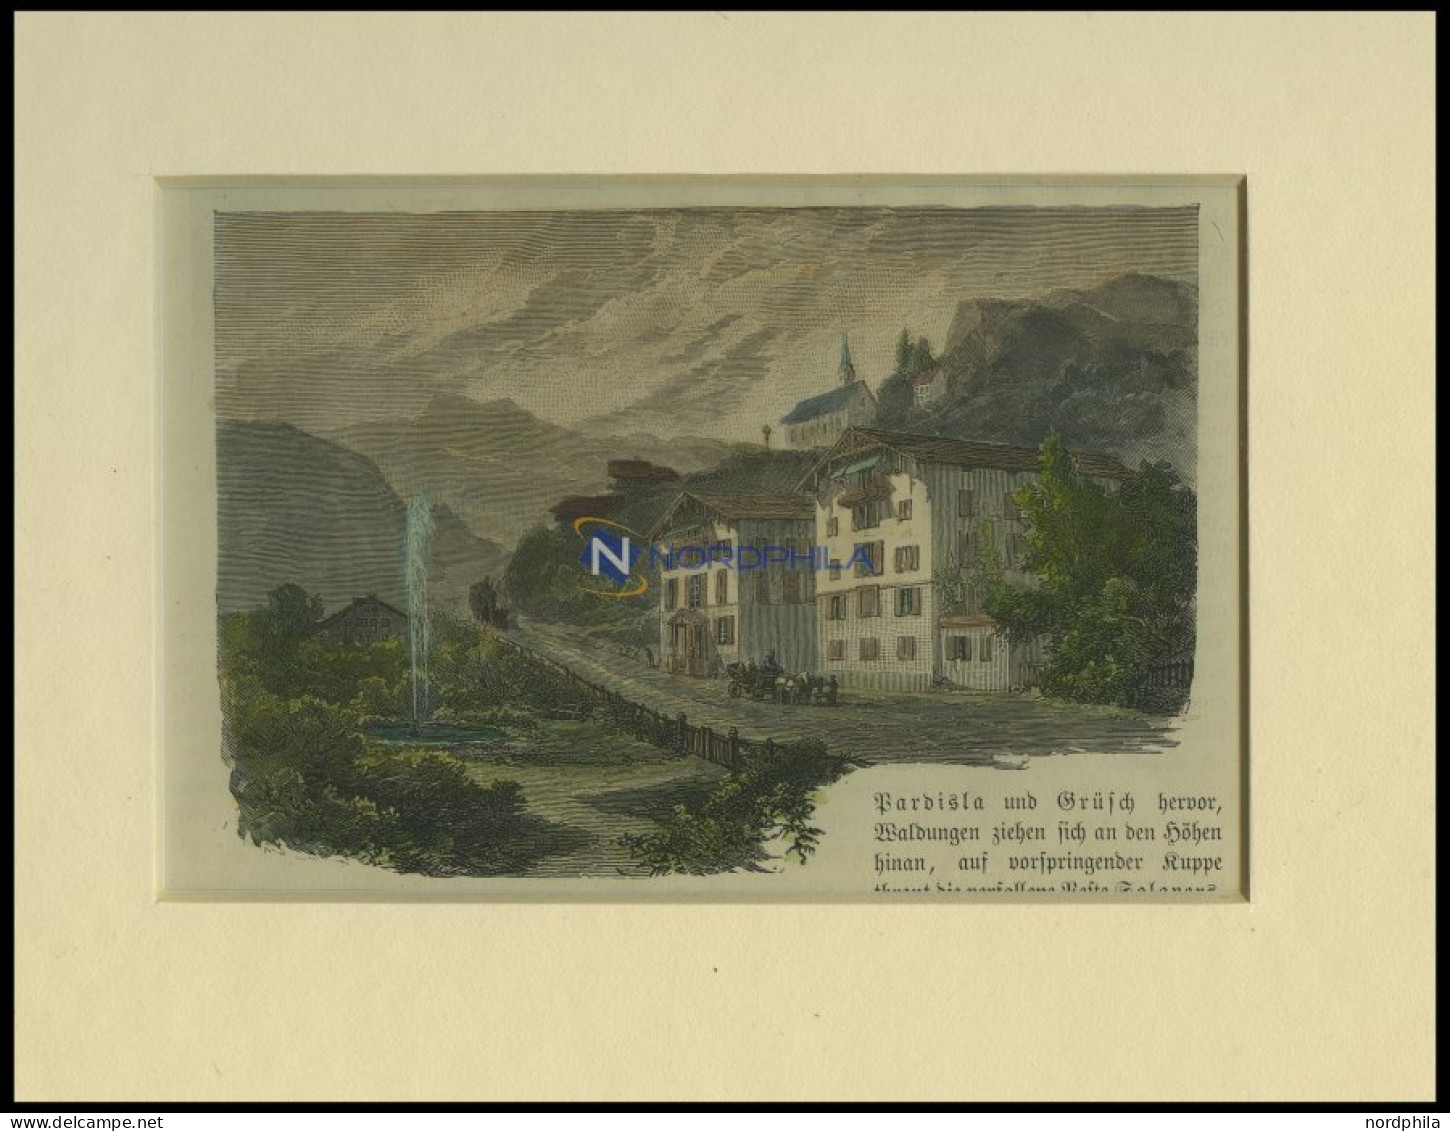 SCHMITTEN, Teilansicht Mit Bad Alveneu, Kolorierter Holzstich Um 1880 - Lithographien